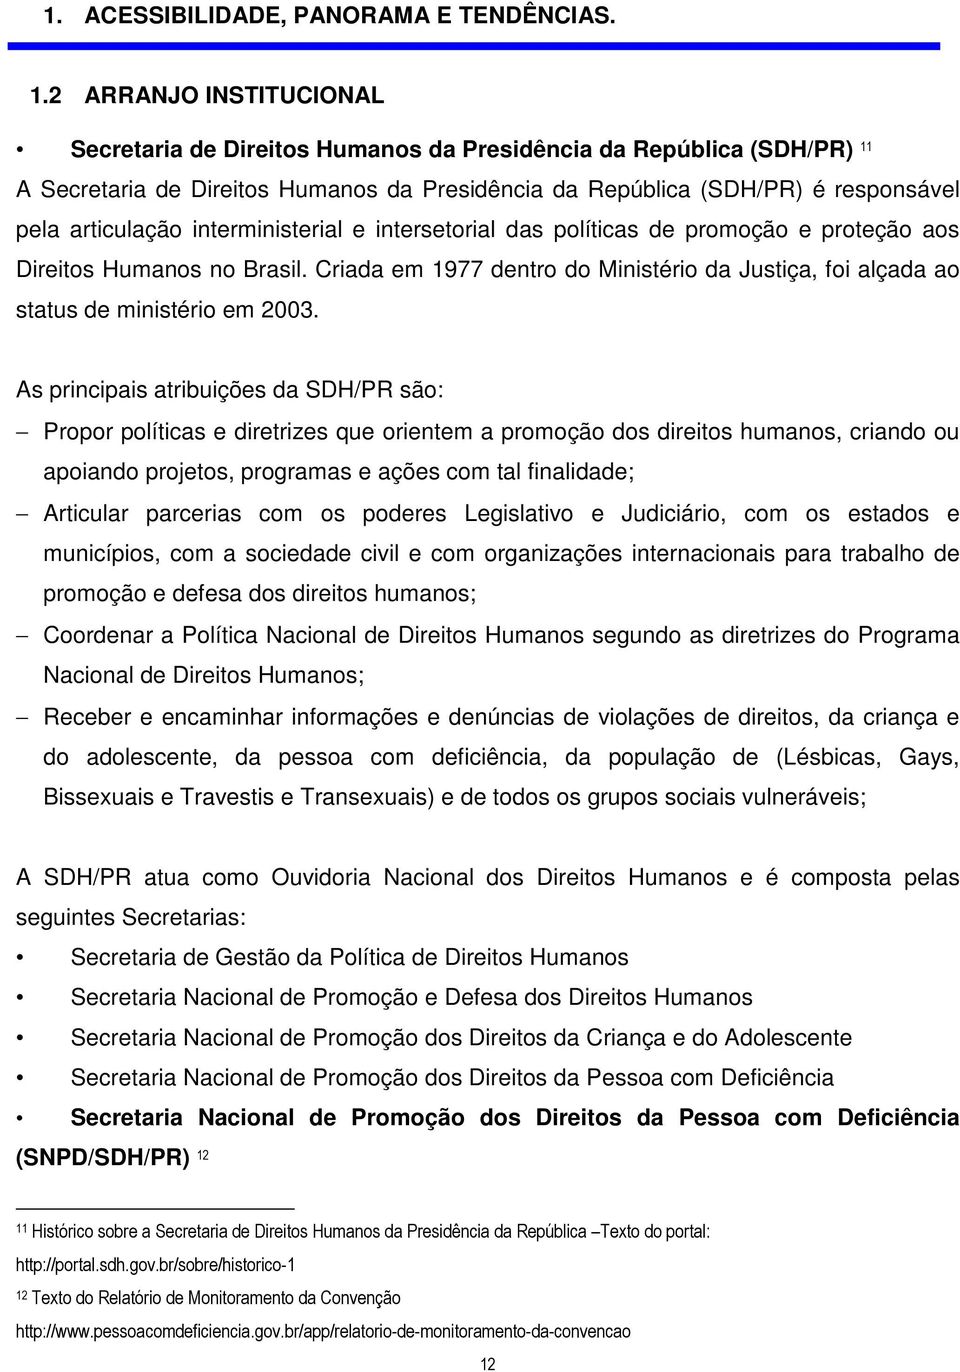 interministerial e intersetorial das políticas de promoção e proteção aos Direitos Humanos no Brasil. Criada em 1977 dentro do Ministério da Justiça, foi alçada ao status de ministério em 2003.